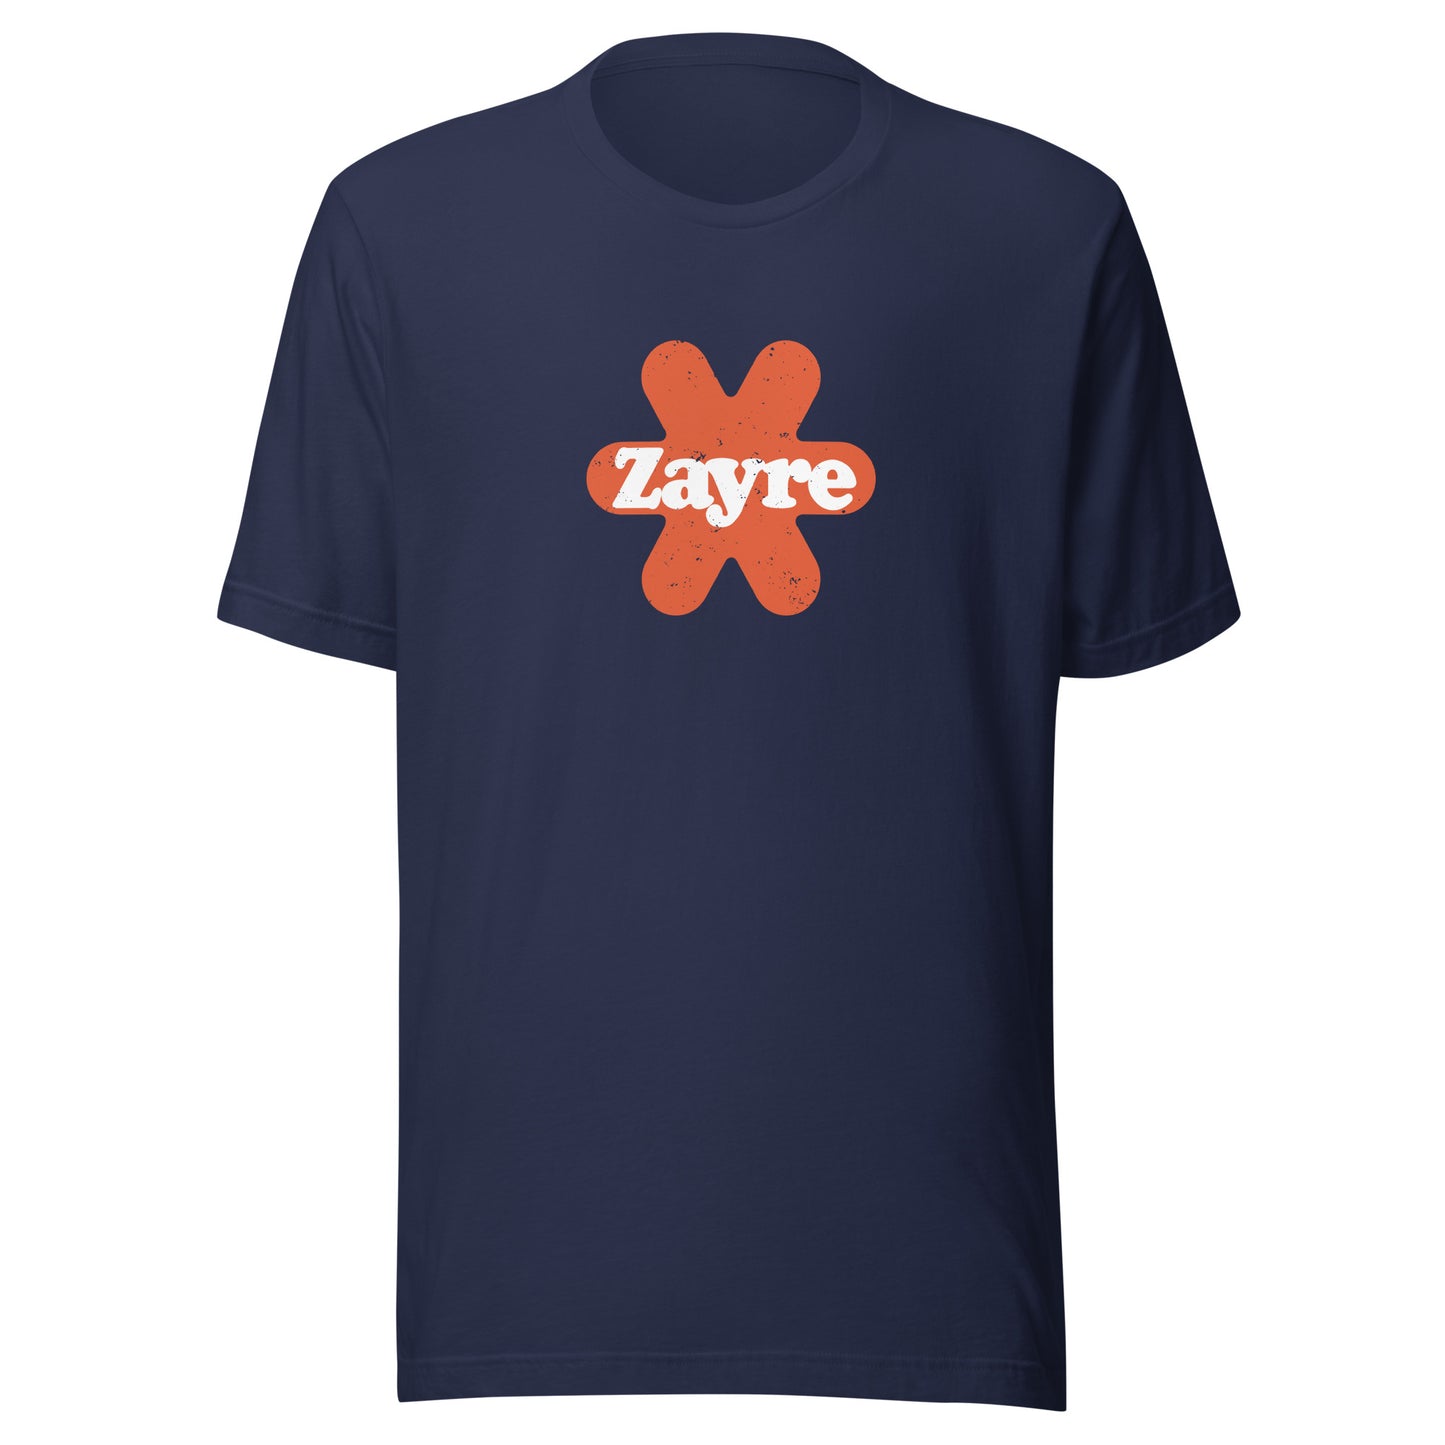 Zayre Retro T-Shirt 1972 | Mens & Womens Vintage Graphic Tee